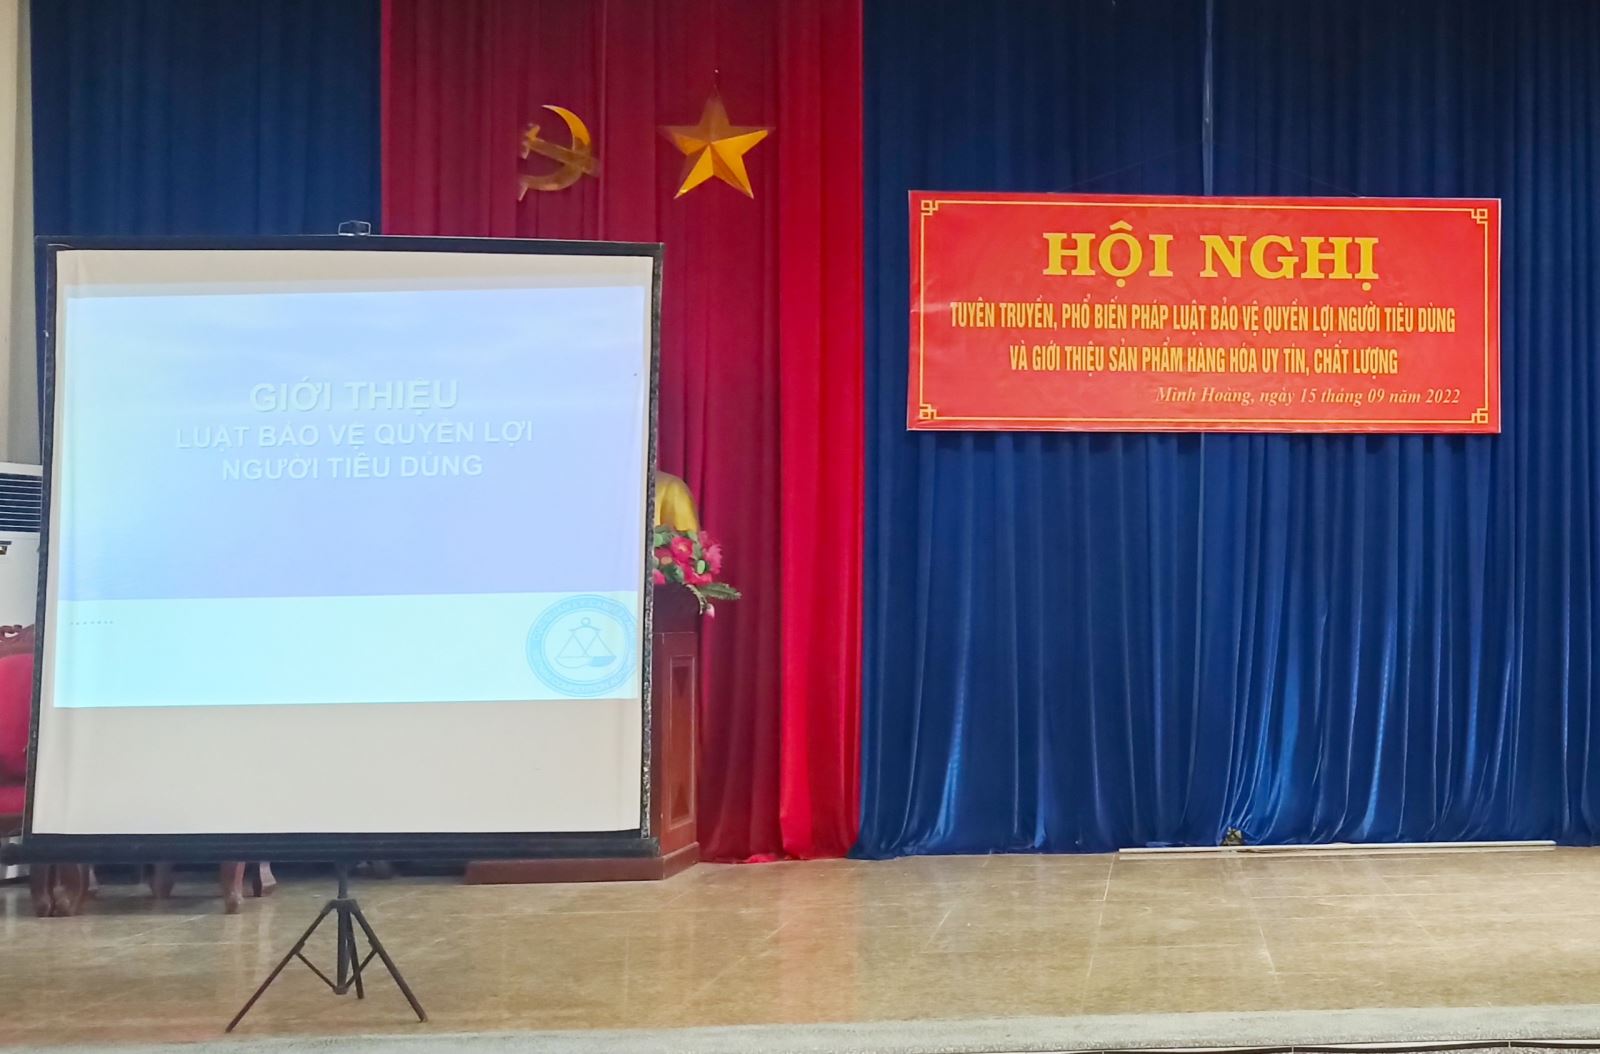 Hưng Yên - Hội nghị tuyên truyền, phổ biến các quy định của pháp luật về bảo vệ quyền lợi người tiêu dùng cho các hội viên phụ nữ huyện Phù Cừ